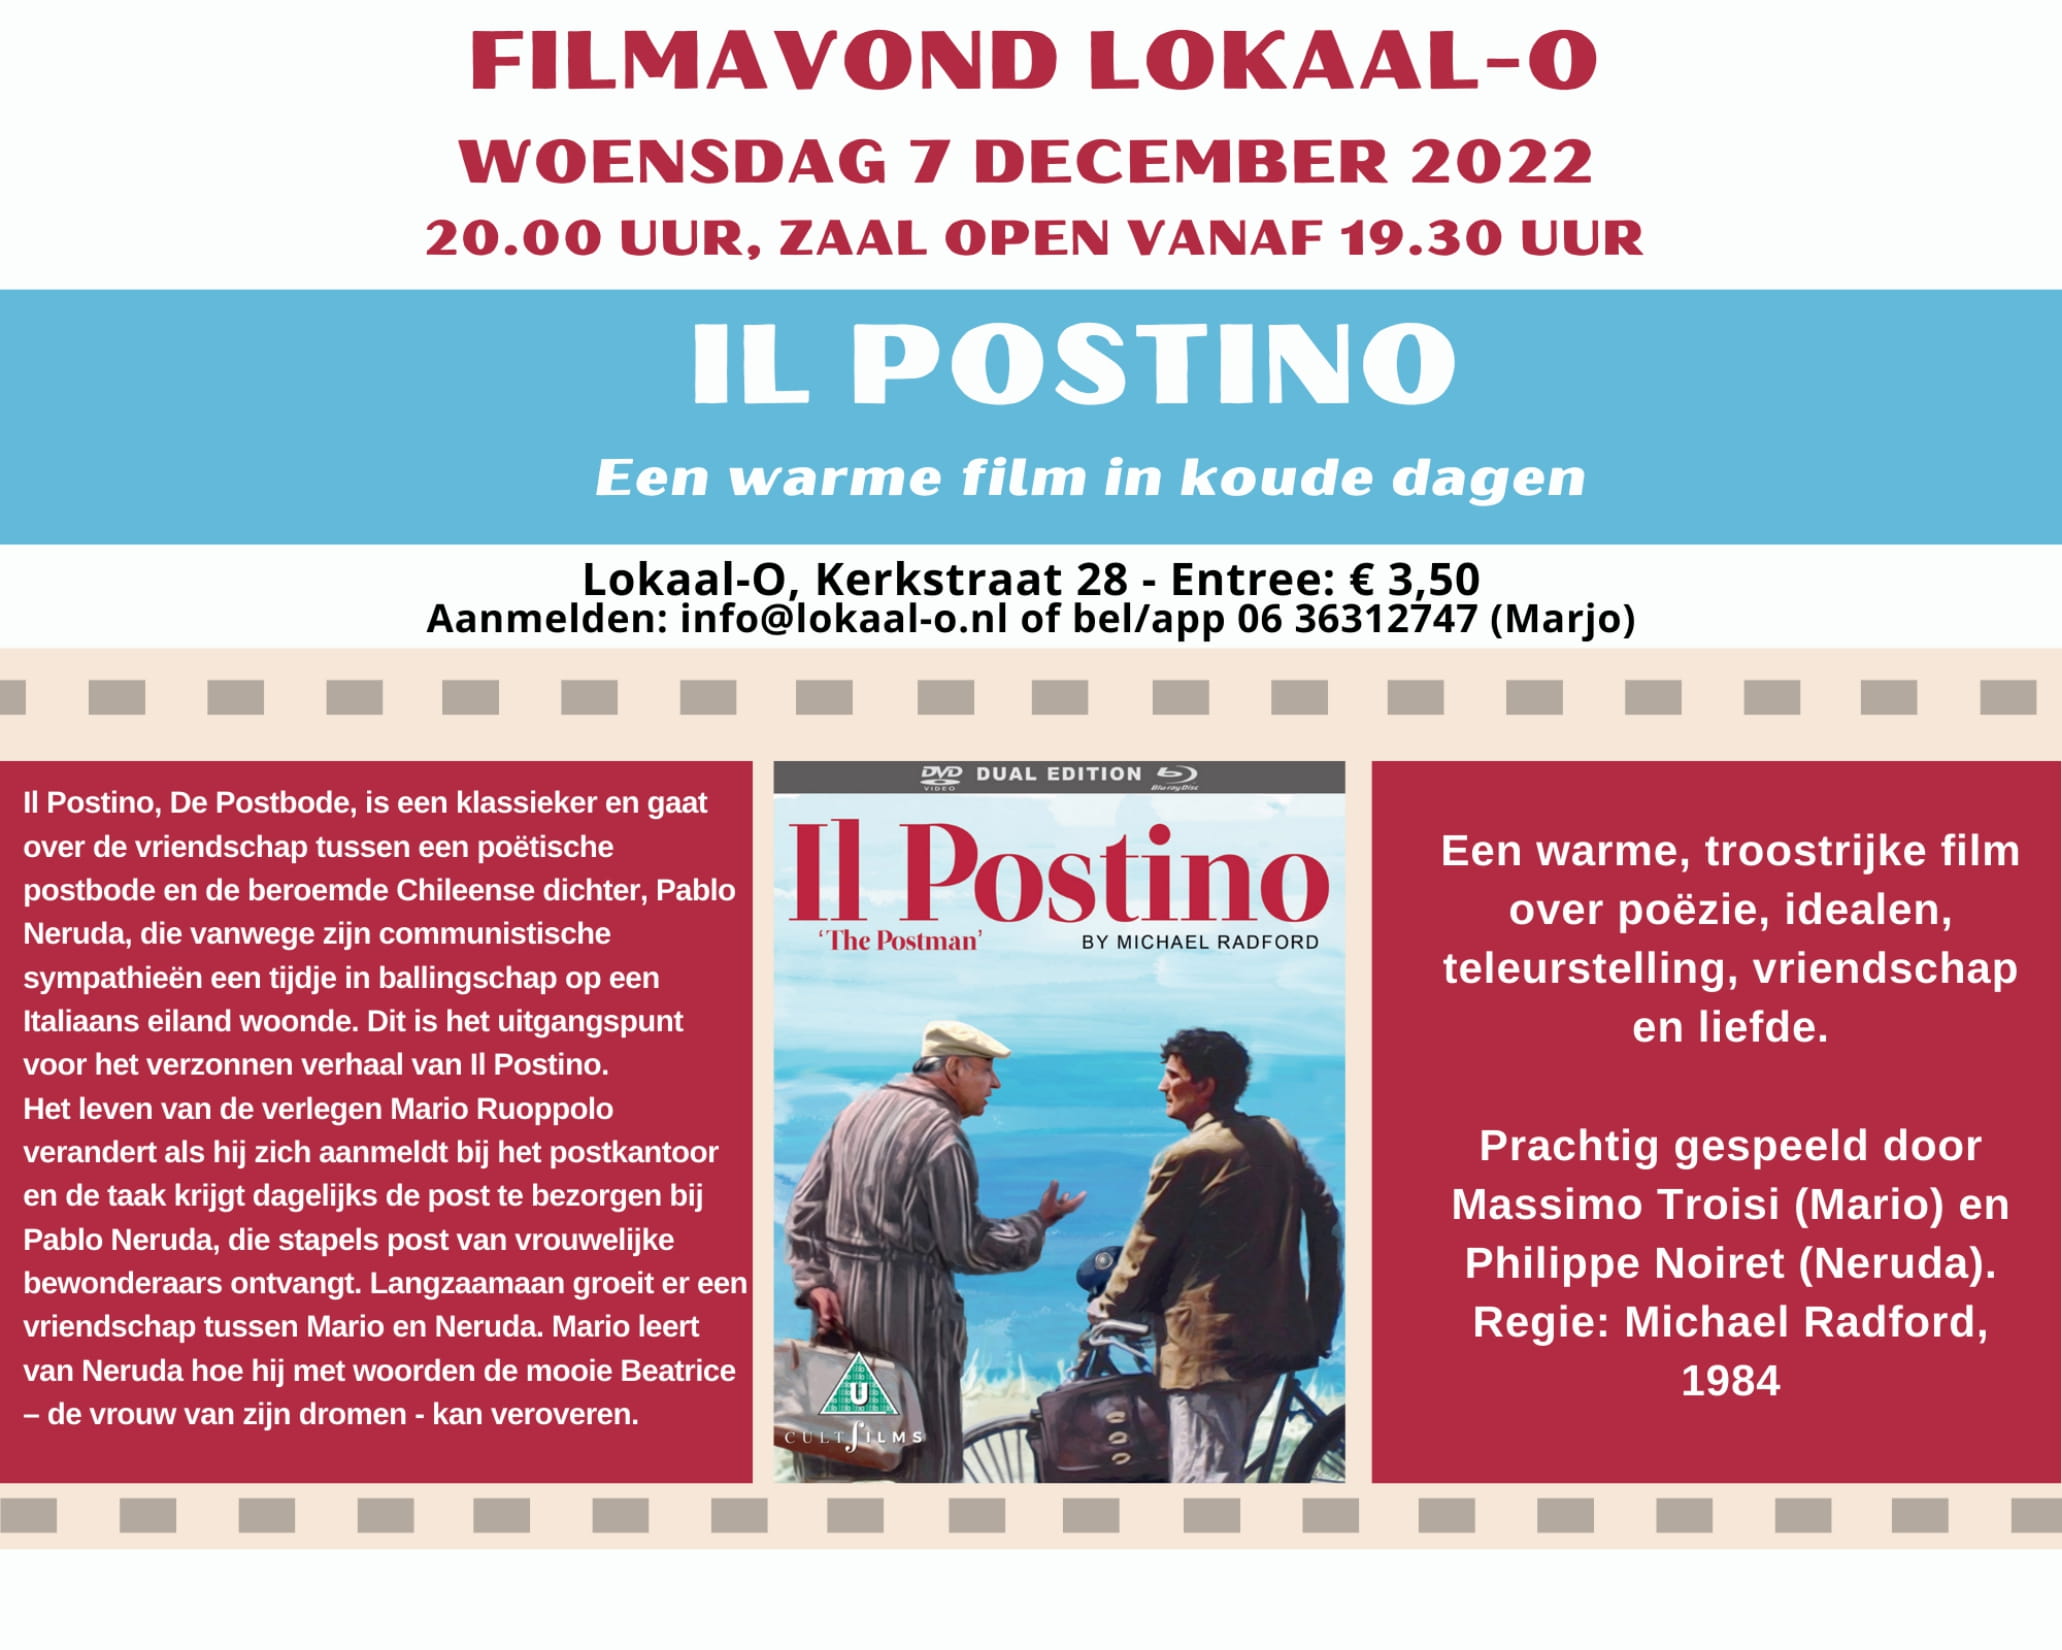 Je bekijkt nu Filmavond op 7 december: “Il postino”, een warme film in koude dagen